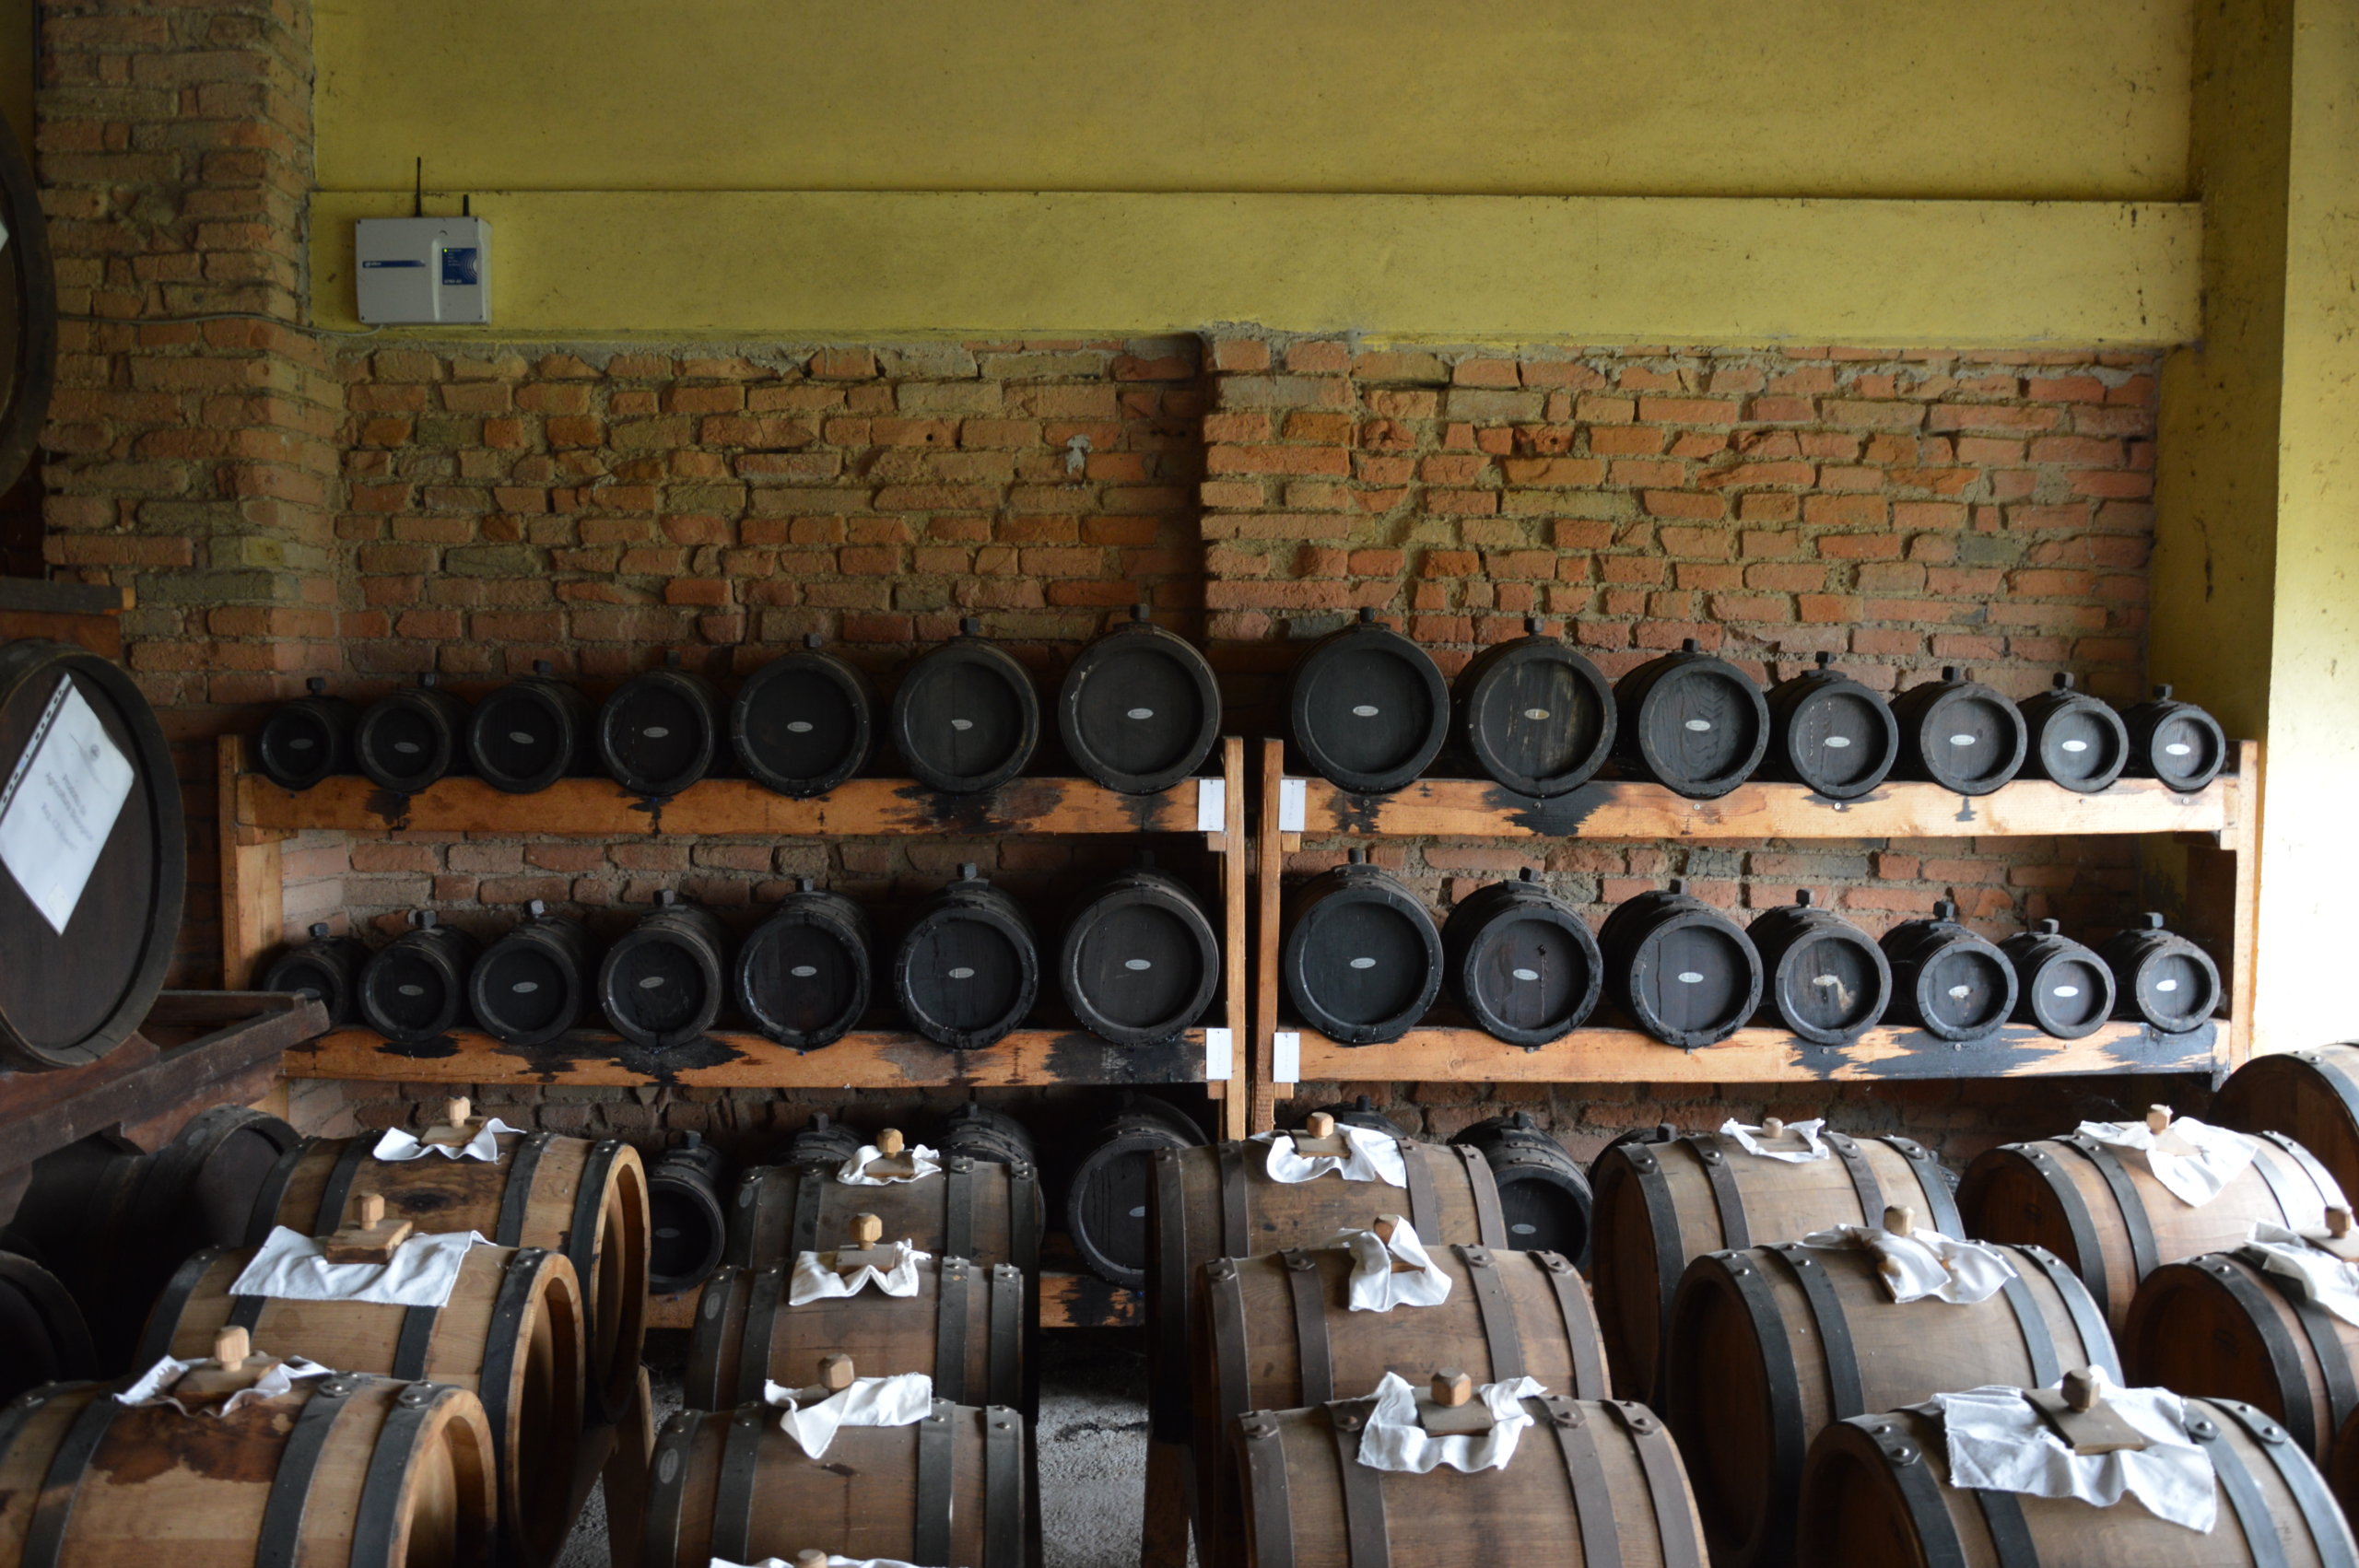 The aging barrels at Acetaia San Giacomo